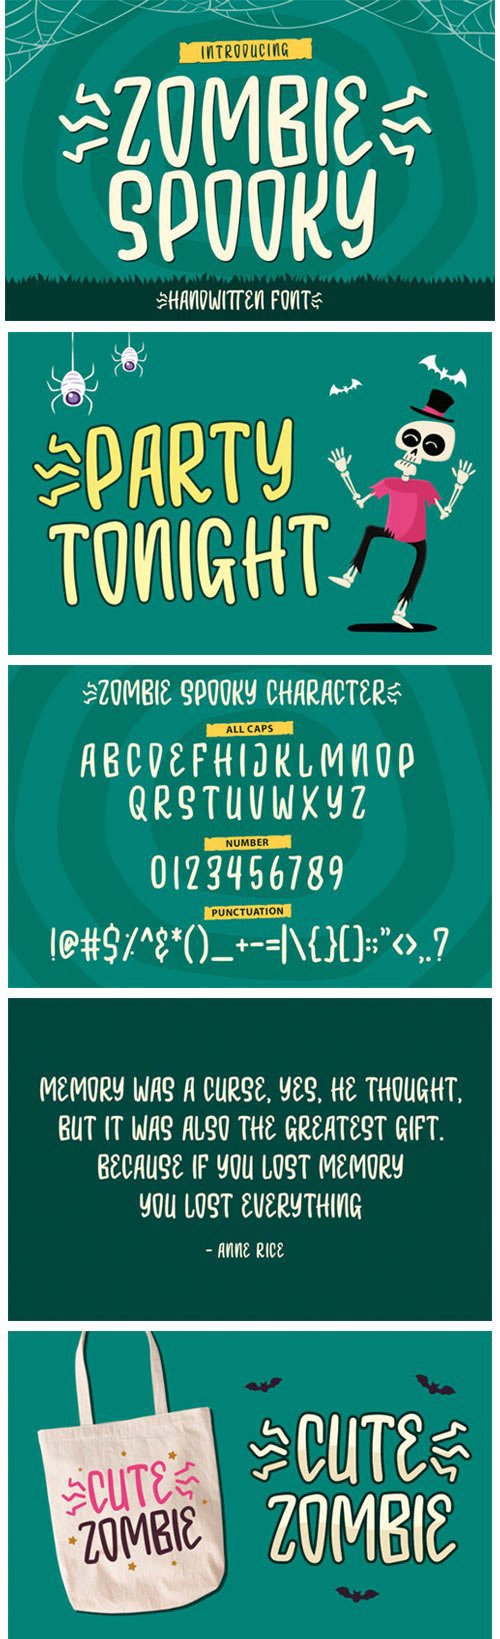 Zombie Spooky Font